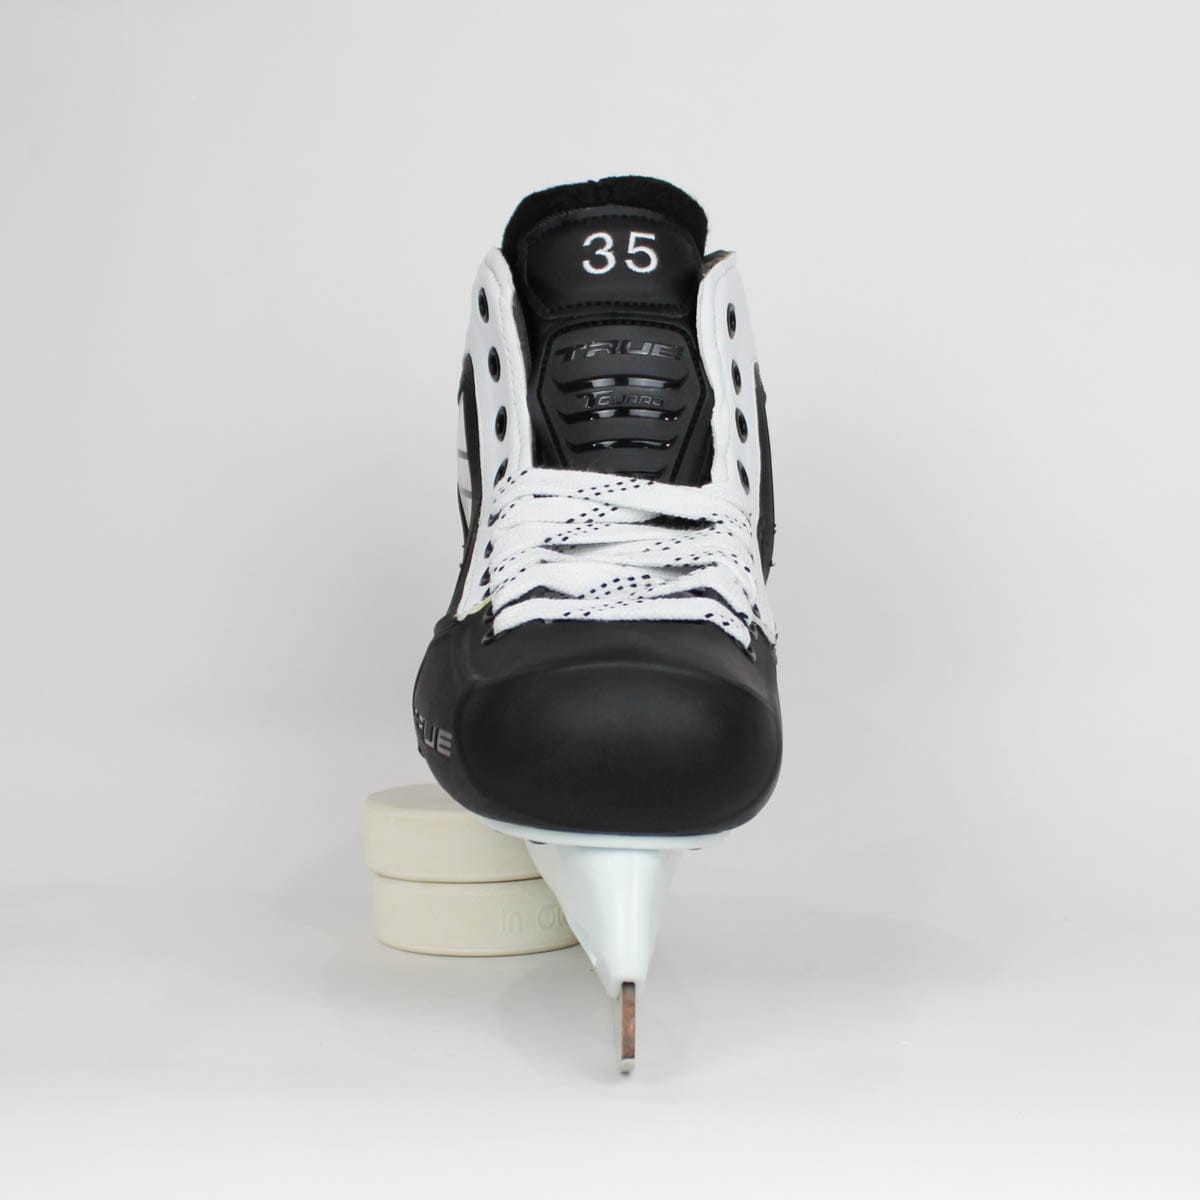 TRUE Senior Two Piece Goalie Skates - Pro Stock - White Side - "35" - Size 10